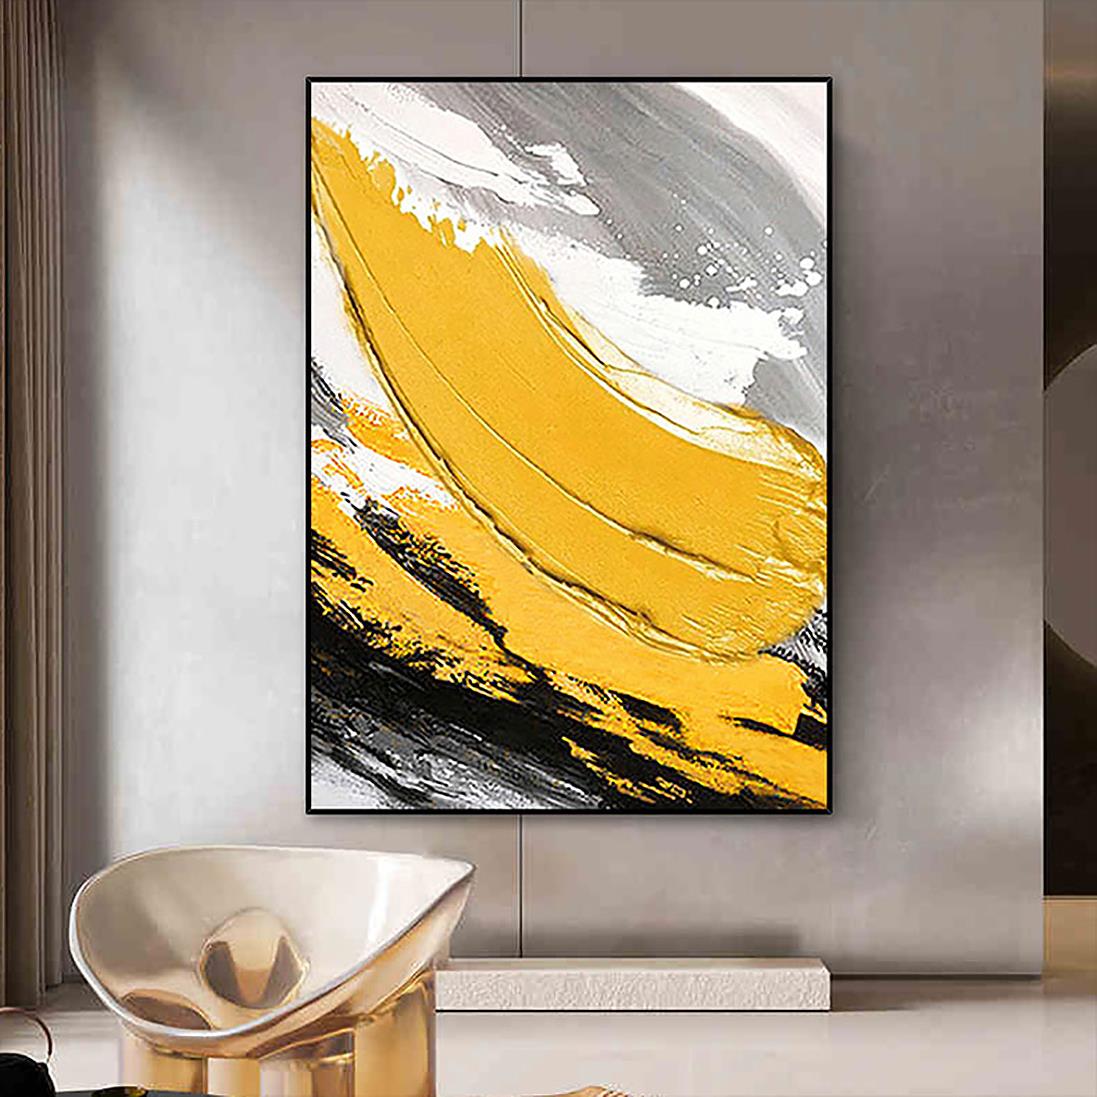 パレットナイフウォールアートミニマリズムによるブラシ抽象的な黄色油絵